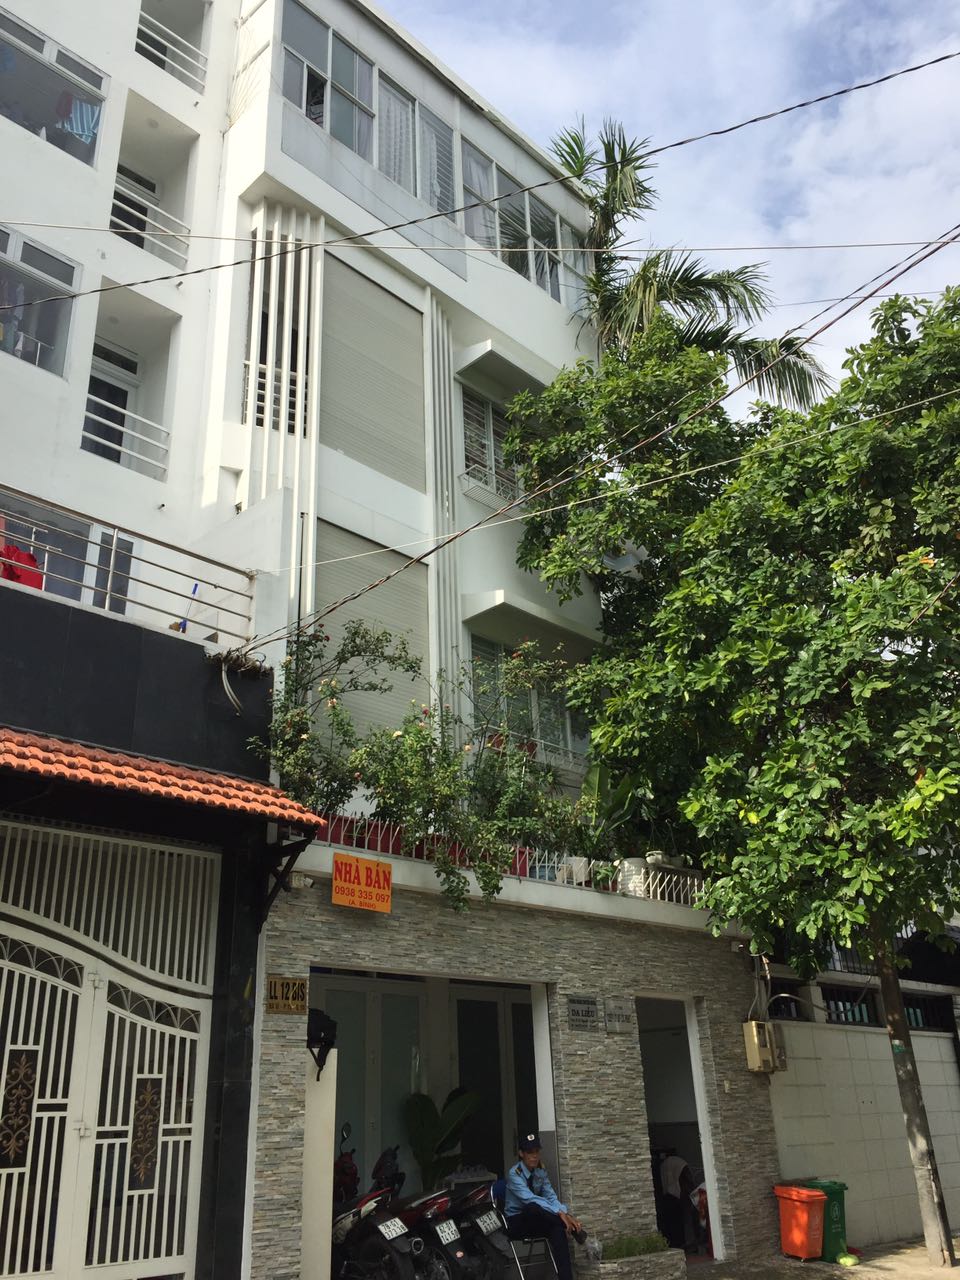 Cần bán nhà hẻm 6m đường Nguyễn Hồng Đào Tân Bình, 4x12m, nhà cũ tiện xây mới, giá đầu tư